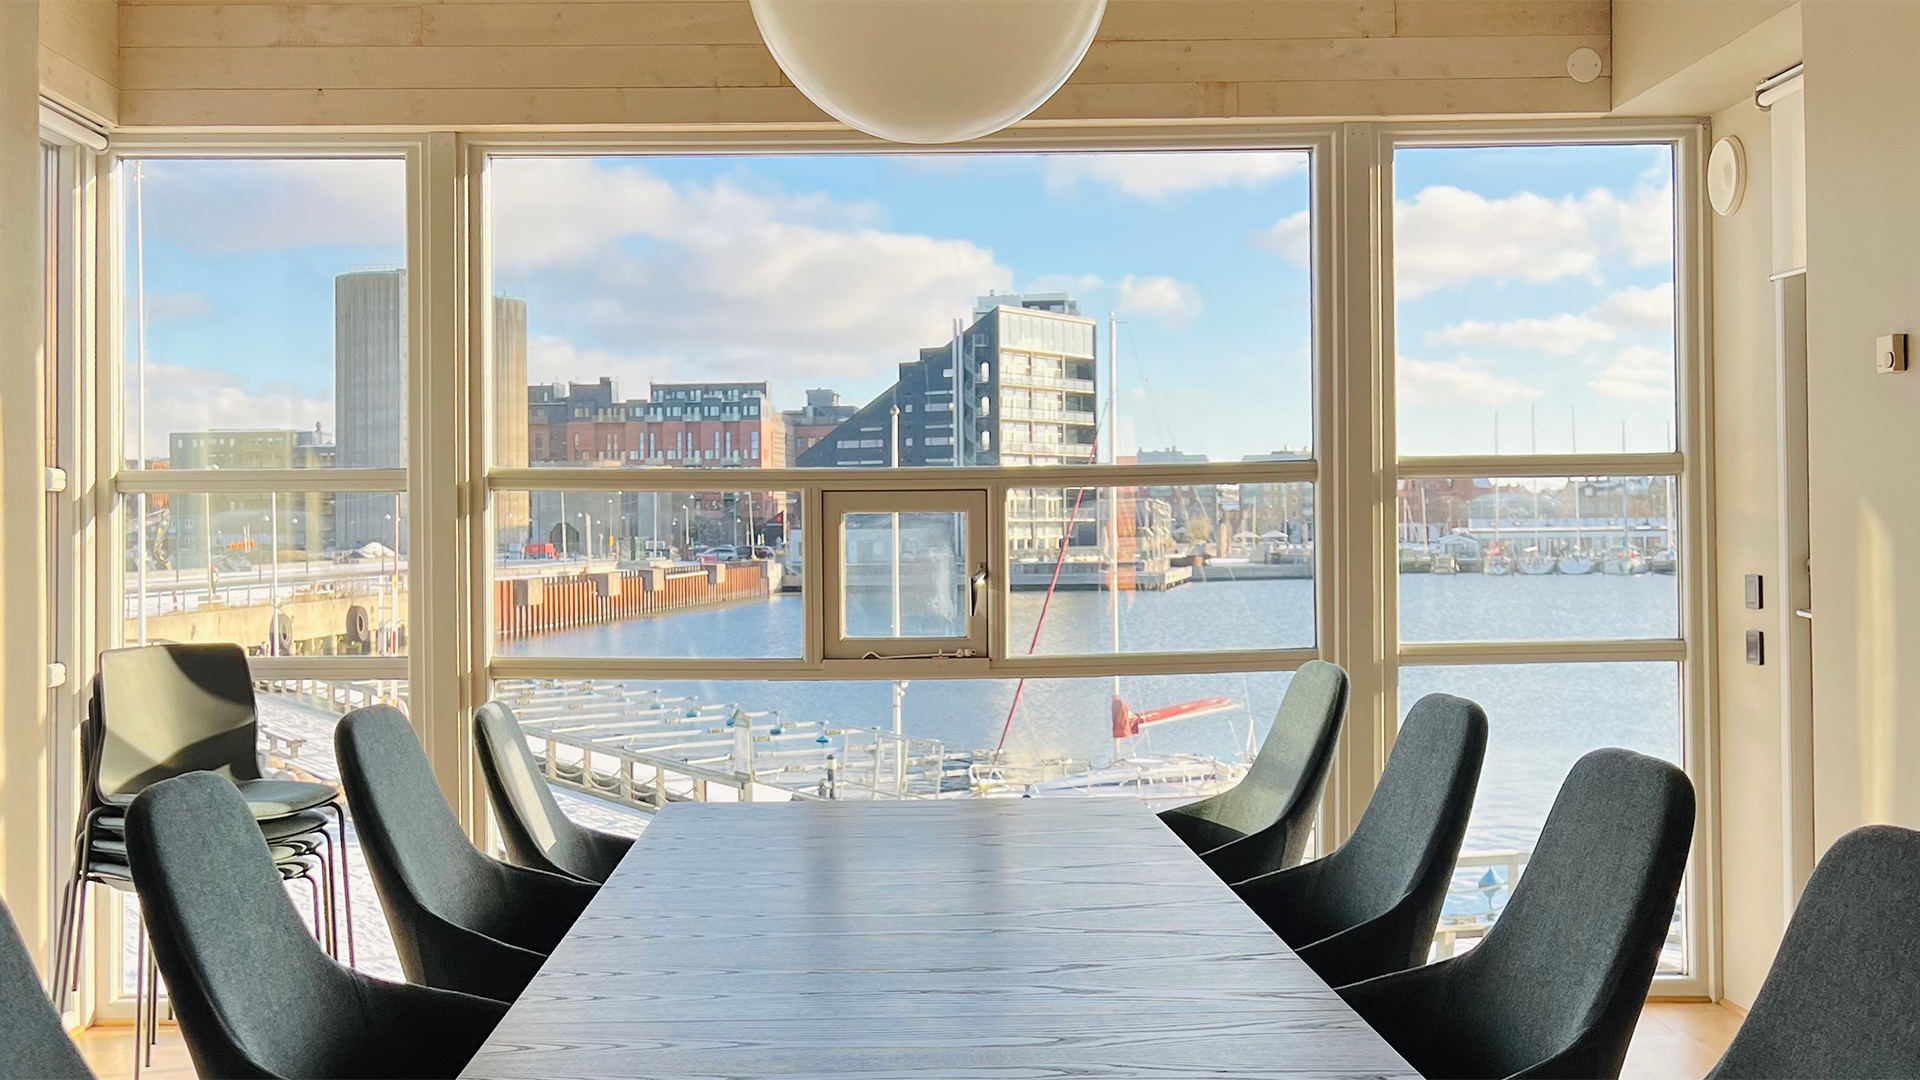 Insig ABs kontorshotell på Ön i Limhamn 